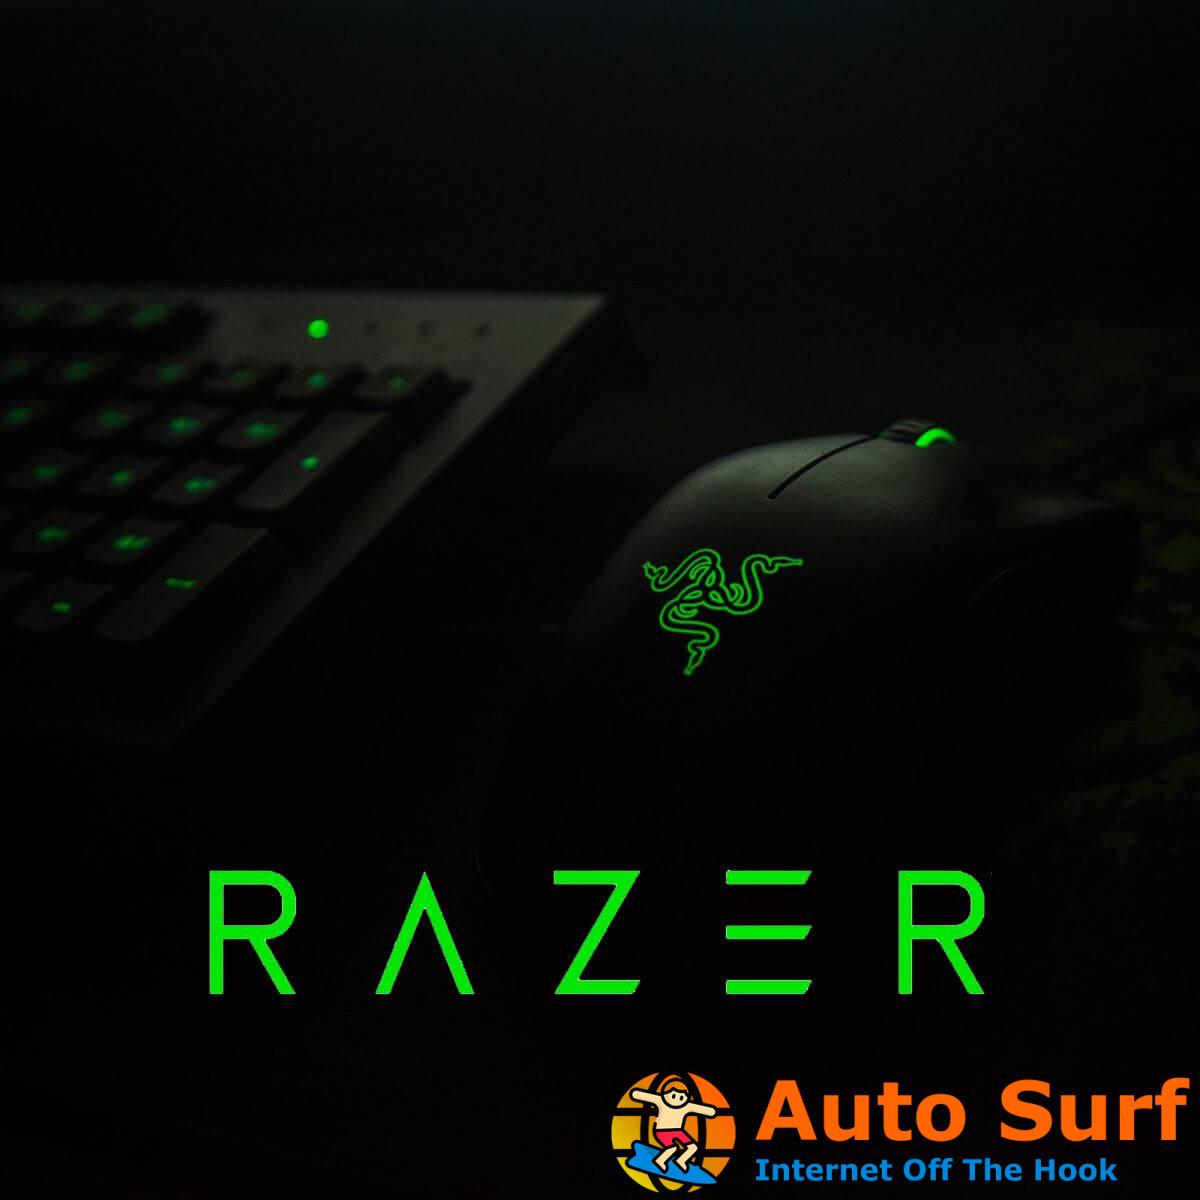 Controlador de mouse Razer: guía de instalación adecuada en Windows 10